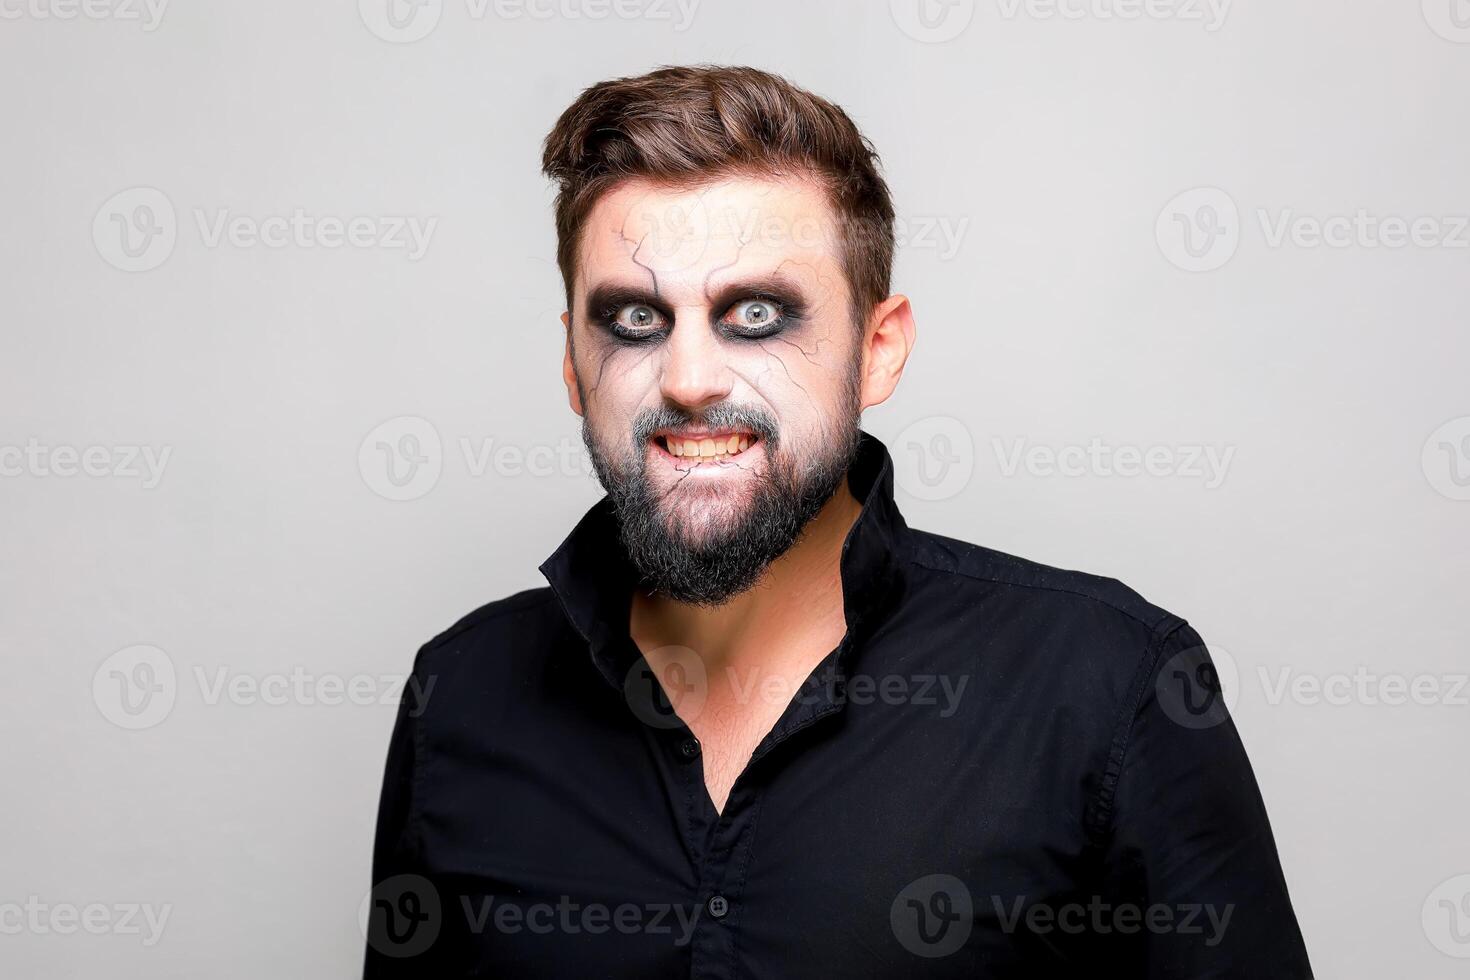 Mort-vivant maquillage pour octobre 31 sur une barbu homme qui spectacles les dents photo